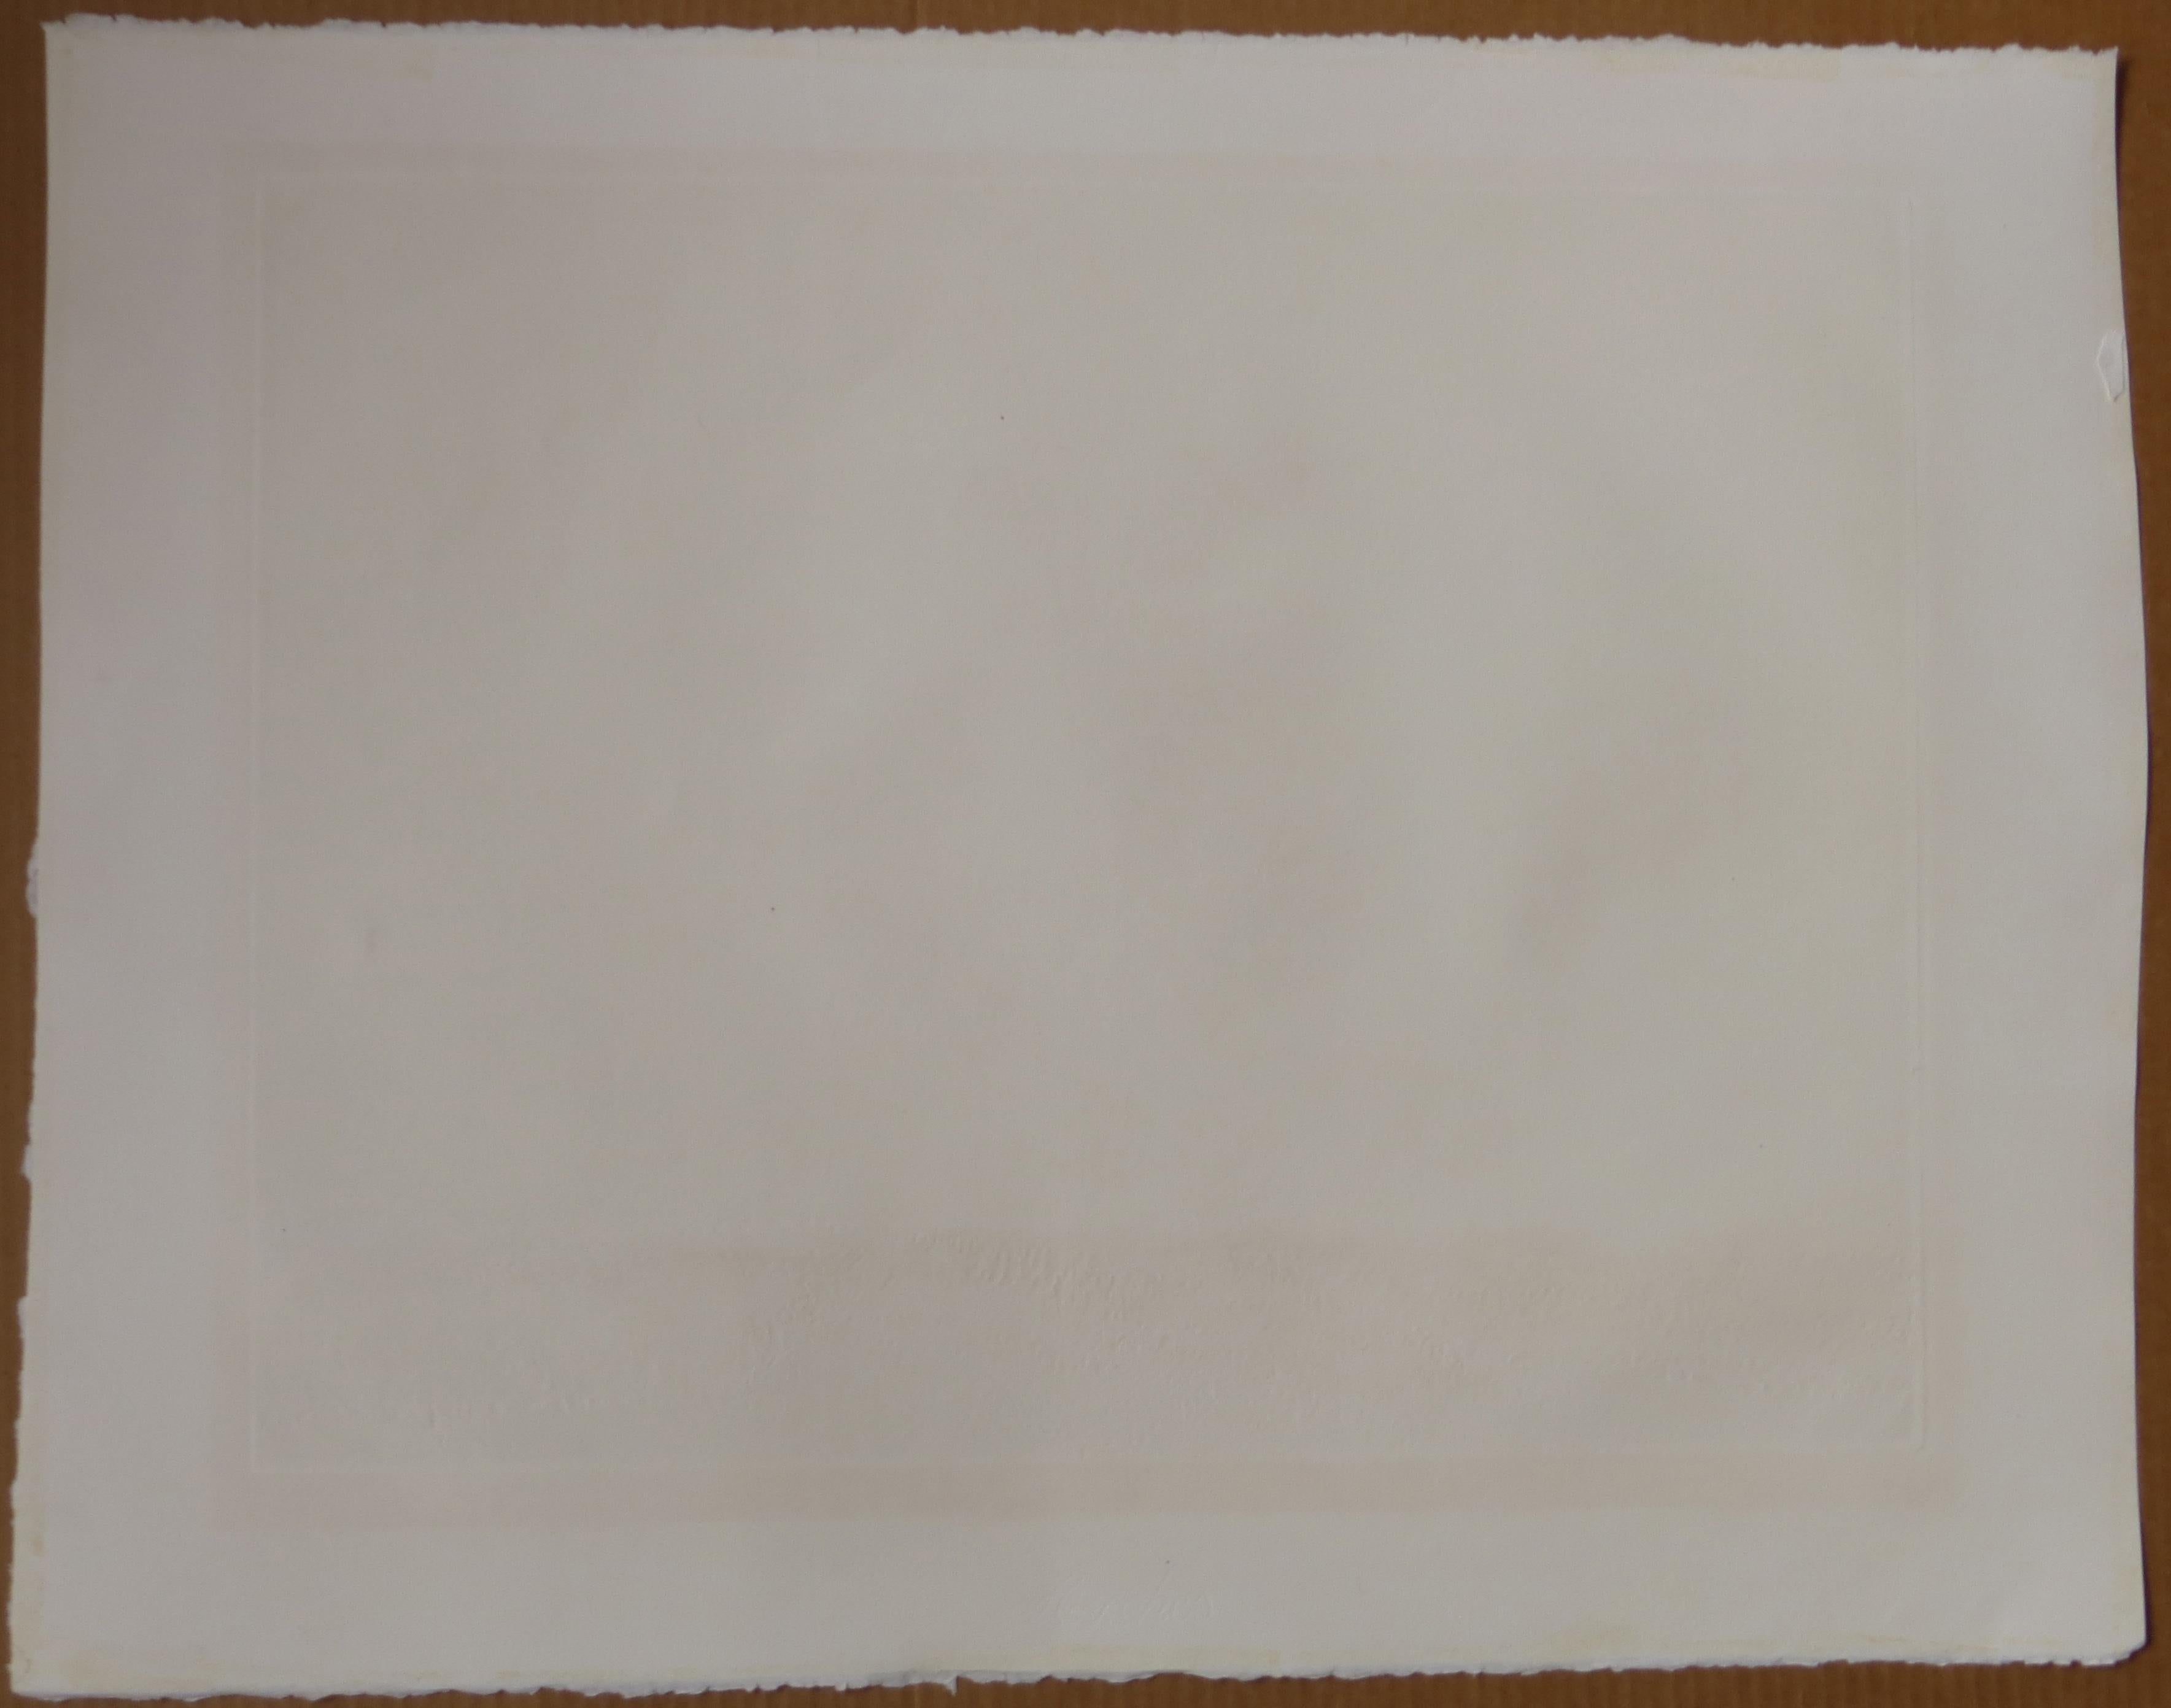 Artiste : Kaiko Moti - Indien/Français (1921-1989-)
Titre : Champs de Lavande (Fields of Lavender)
Année : 1979
Médium : Aquatinte en couleur sur papier Arches 
Taille de la vue : 17,25 x 22,5 pouces. 
Taille de la feuille : 22.5 x 28 pouces